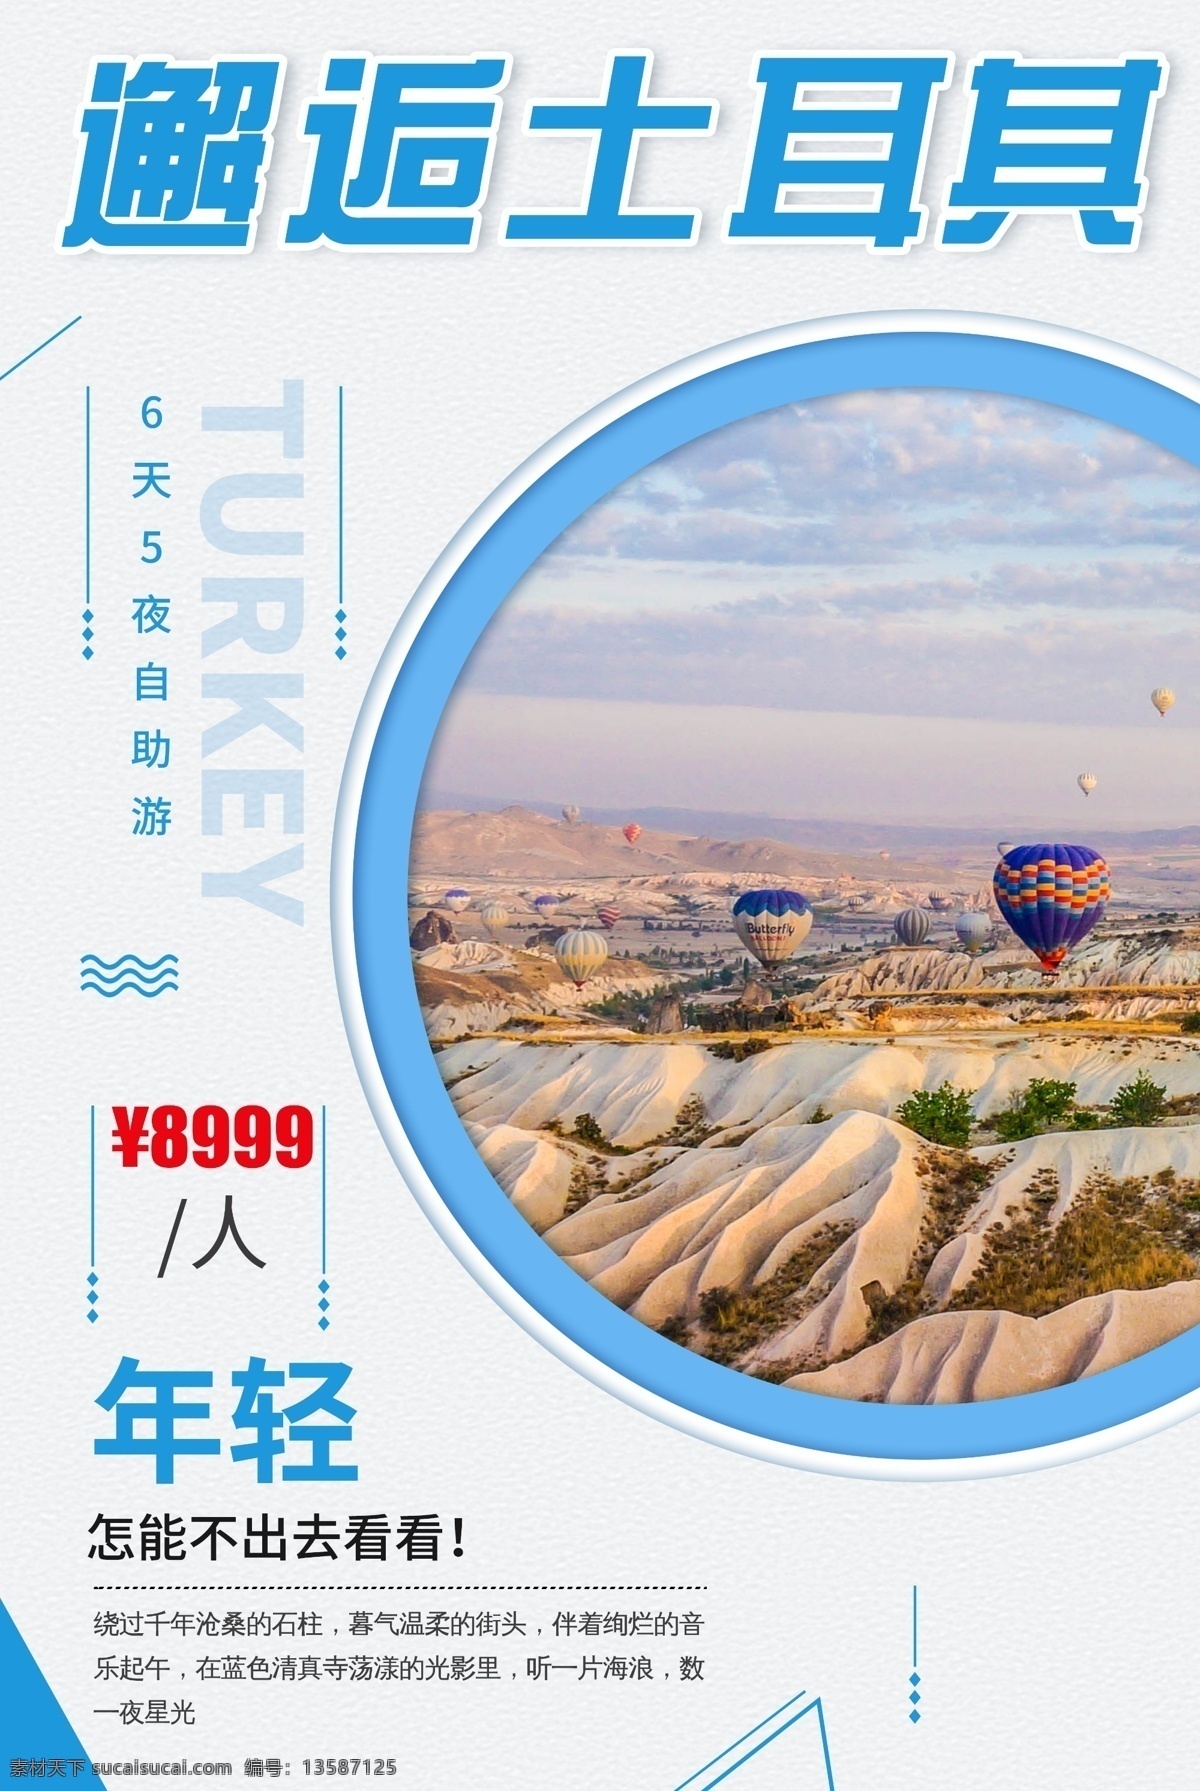 邂逅 土耳其 旅游 海报 旅游海报 psd素材 国外旅游 海报素材